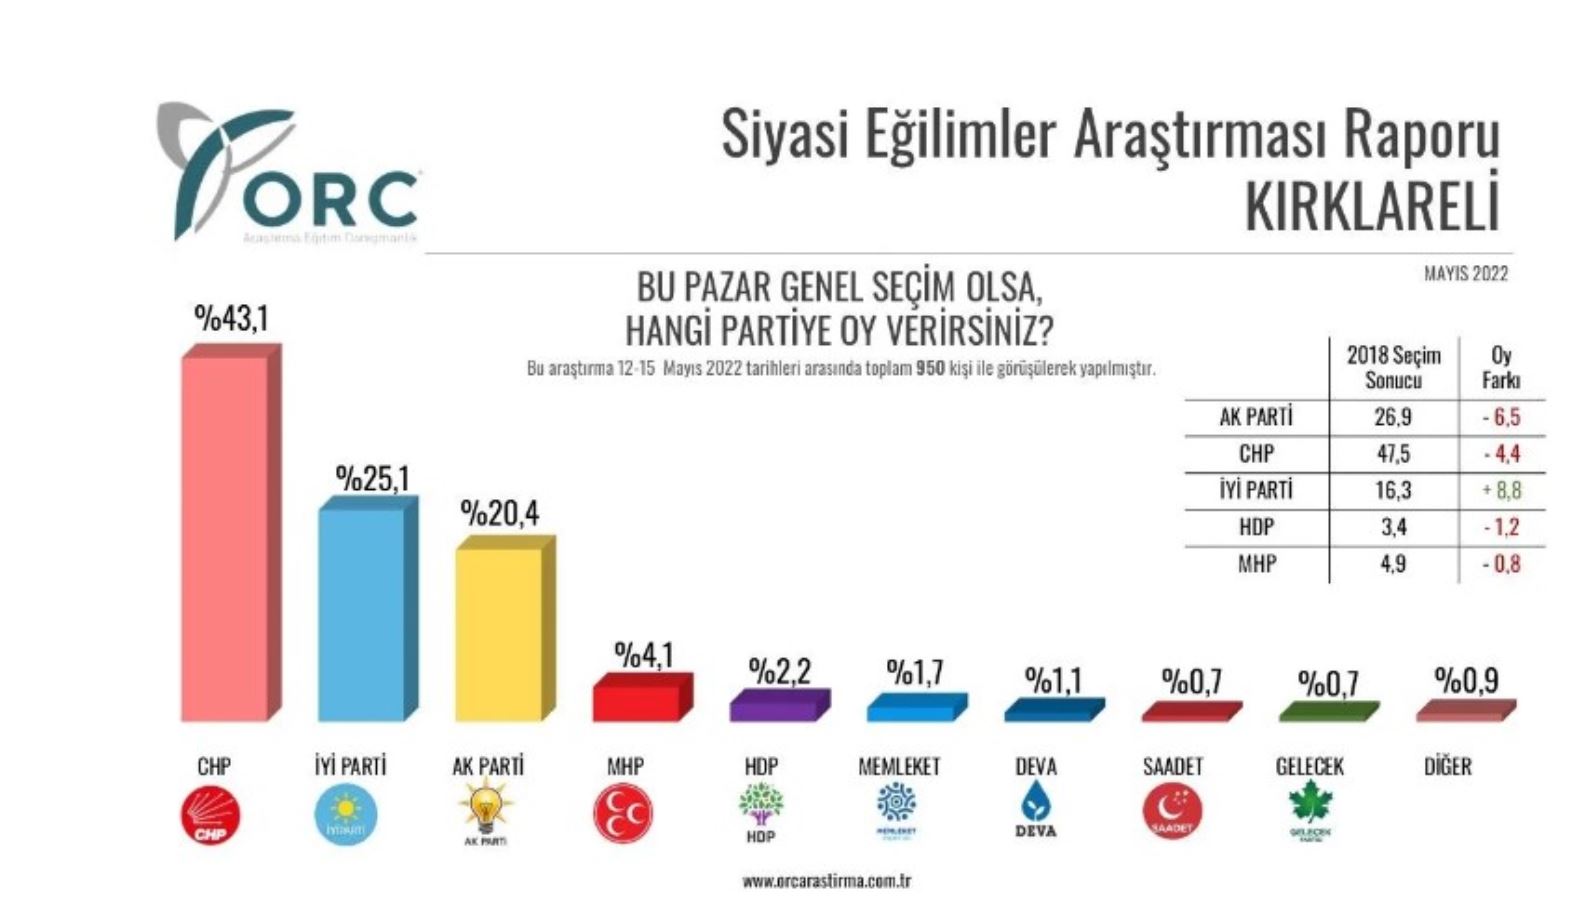 <p>Kırklareli'nde CHP yüzde 43,1'le ilk sırada yer alırken, İYİ Parti yüzde 25,1'le iki, AKP ise yüzde 20,4'le üçüncü sırada yer aldı.</p>